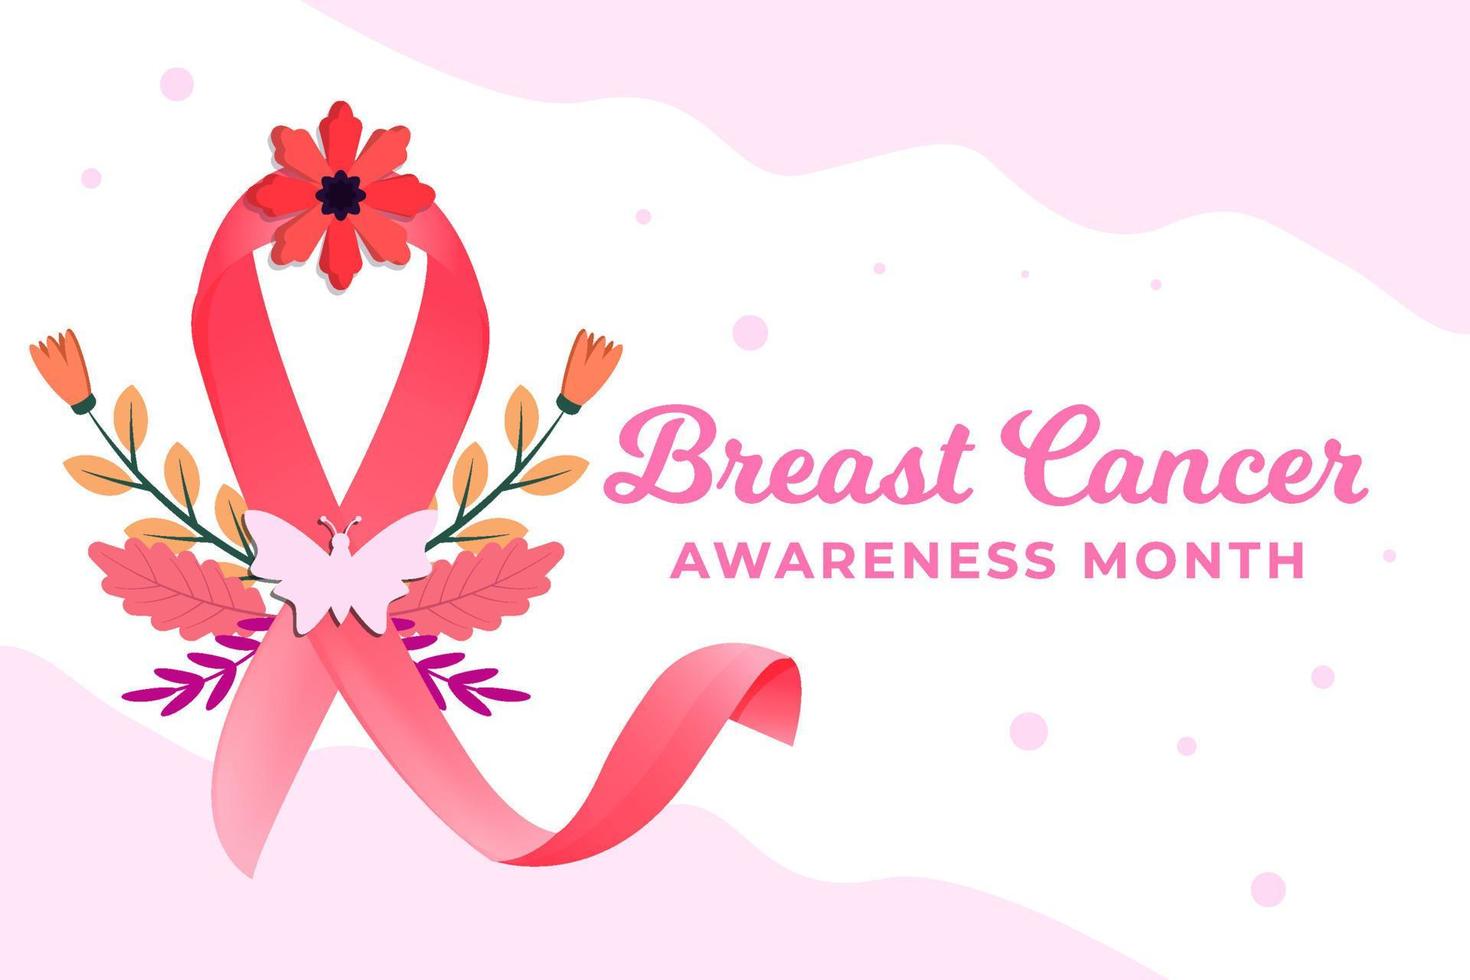 bröst cancer medvetenhet månad illustration med rosett band och blommor vektor